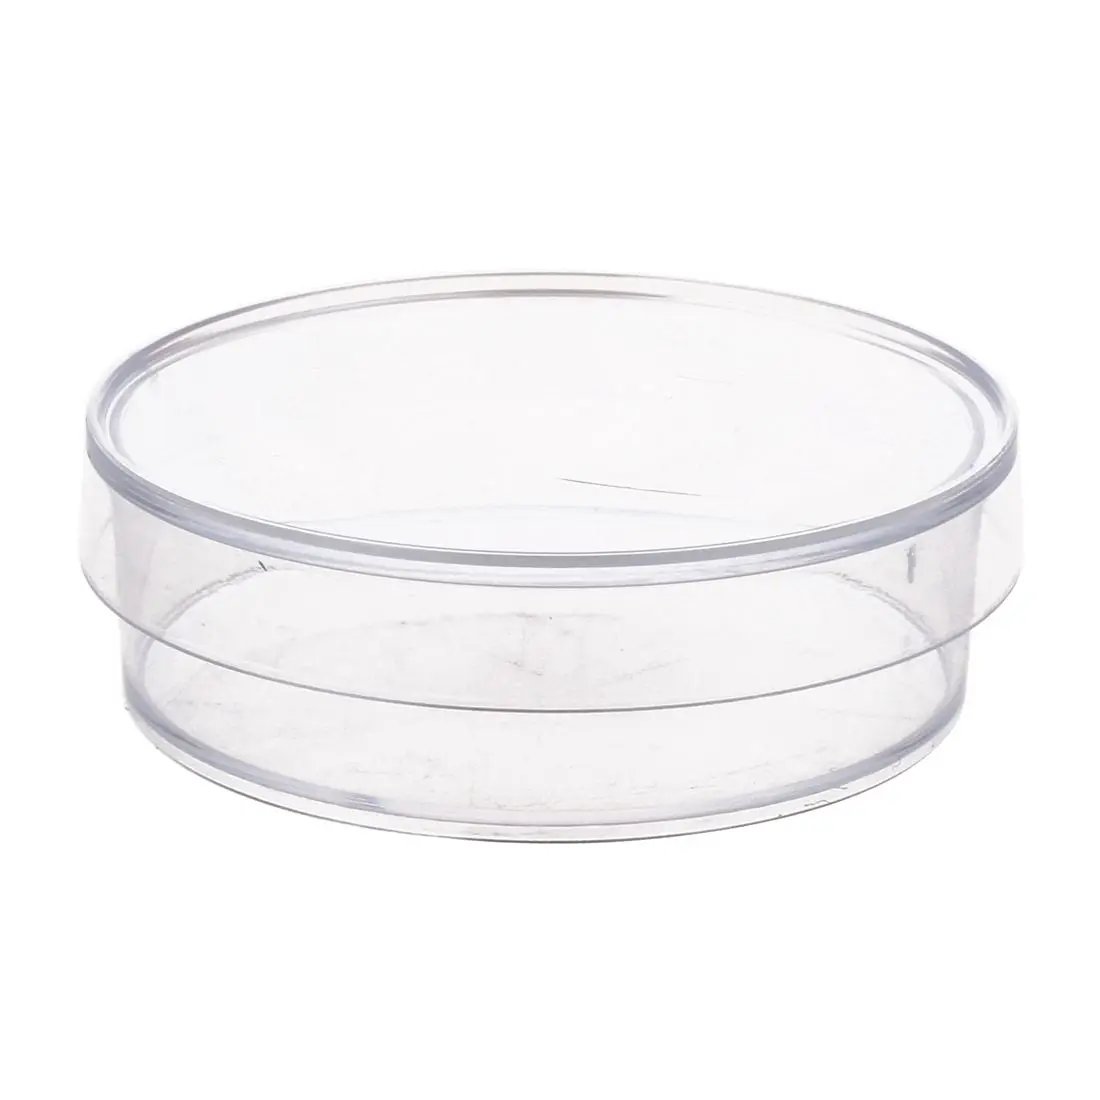 10 шт. 35 мм х 10 мм стерильные пластиковые чашки Петри с крышкой для LB плиты дрожжей(прозрачный цвет